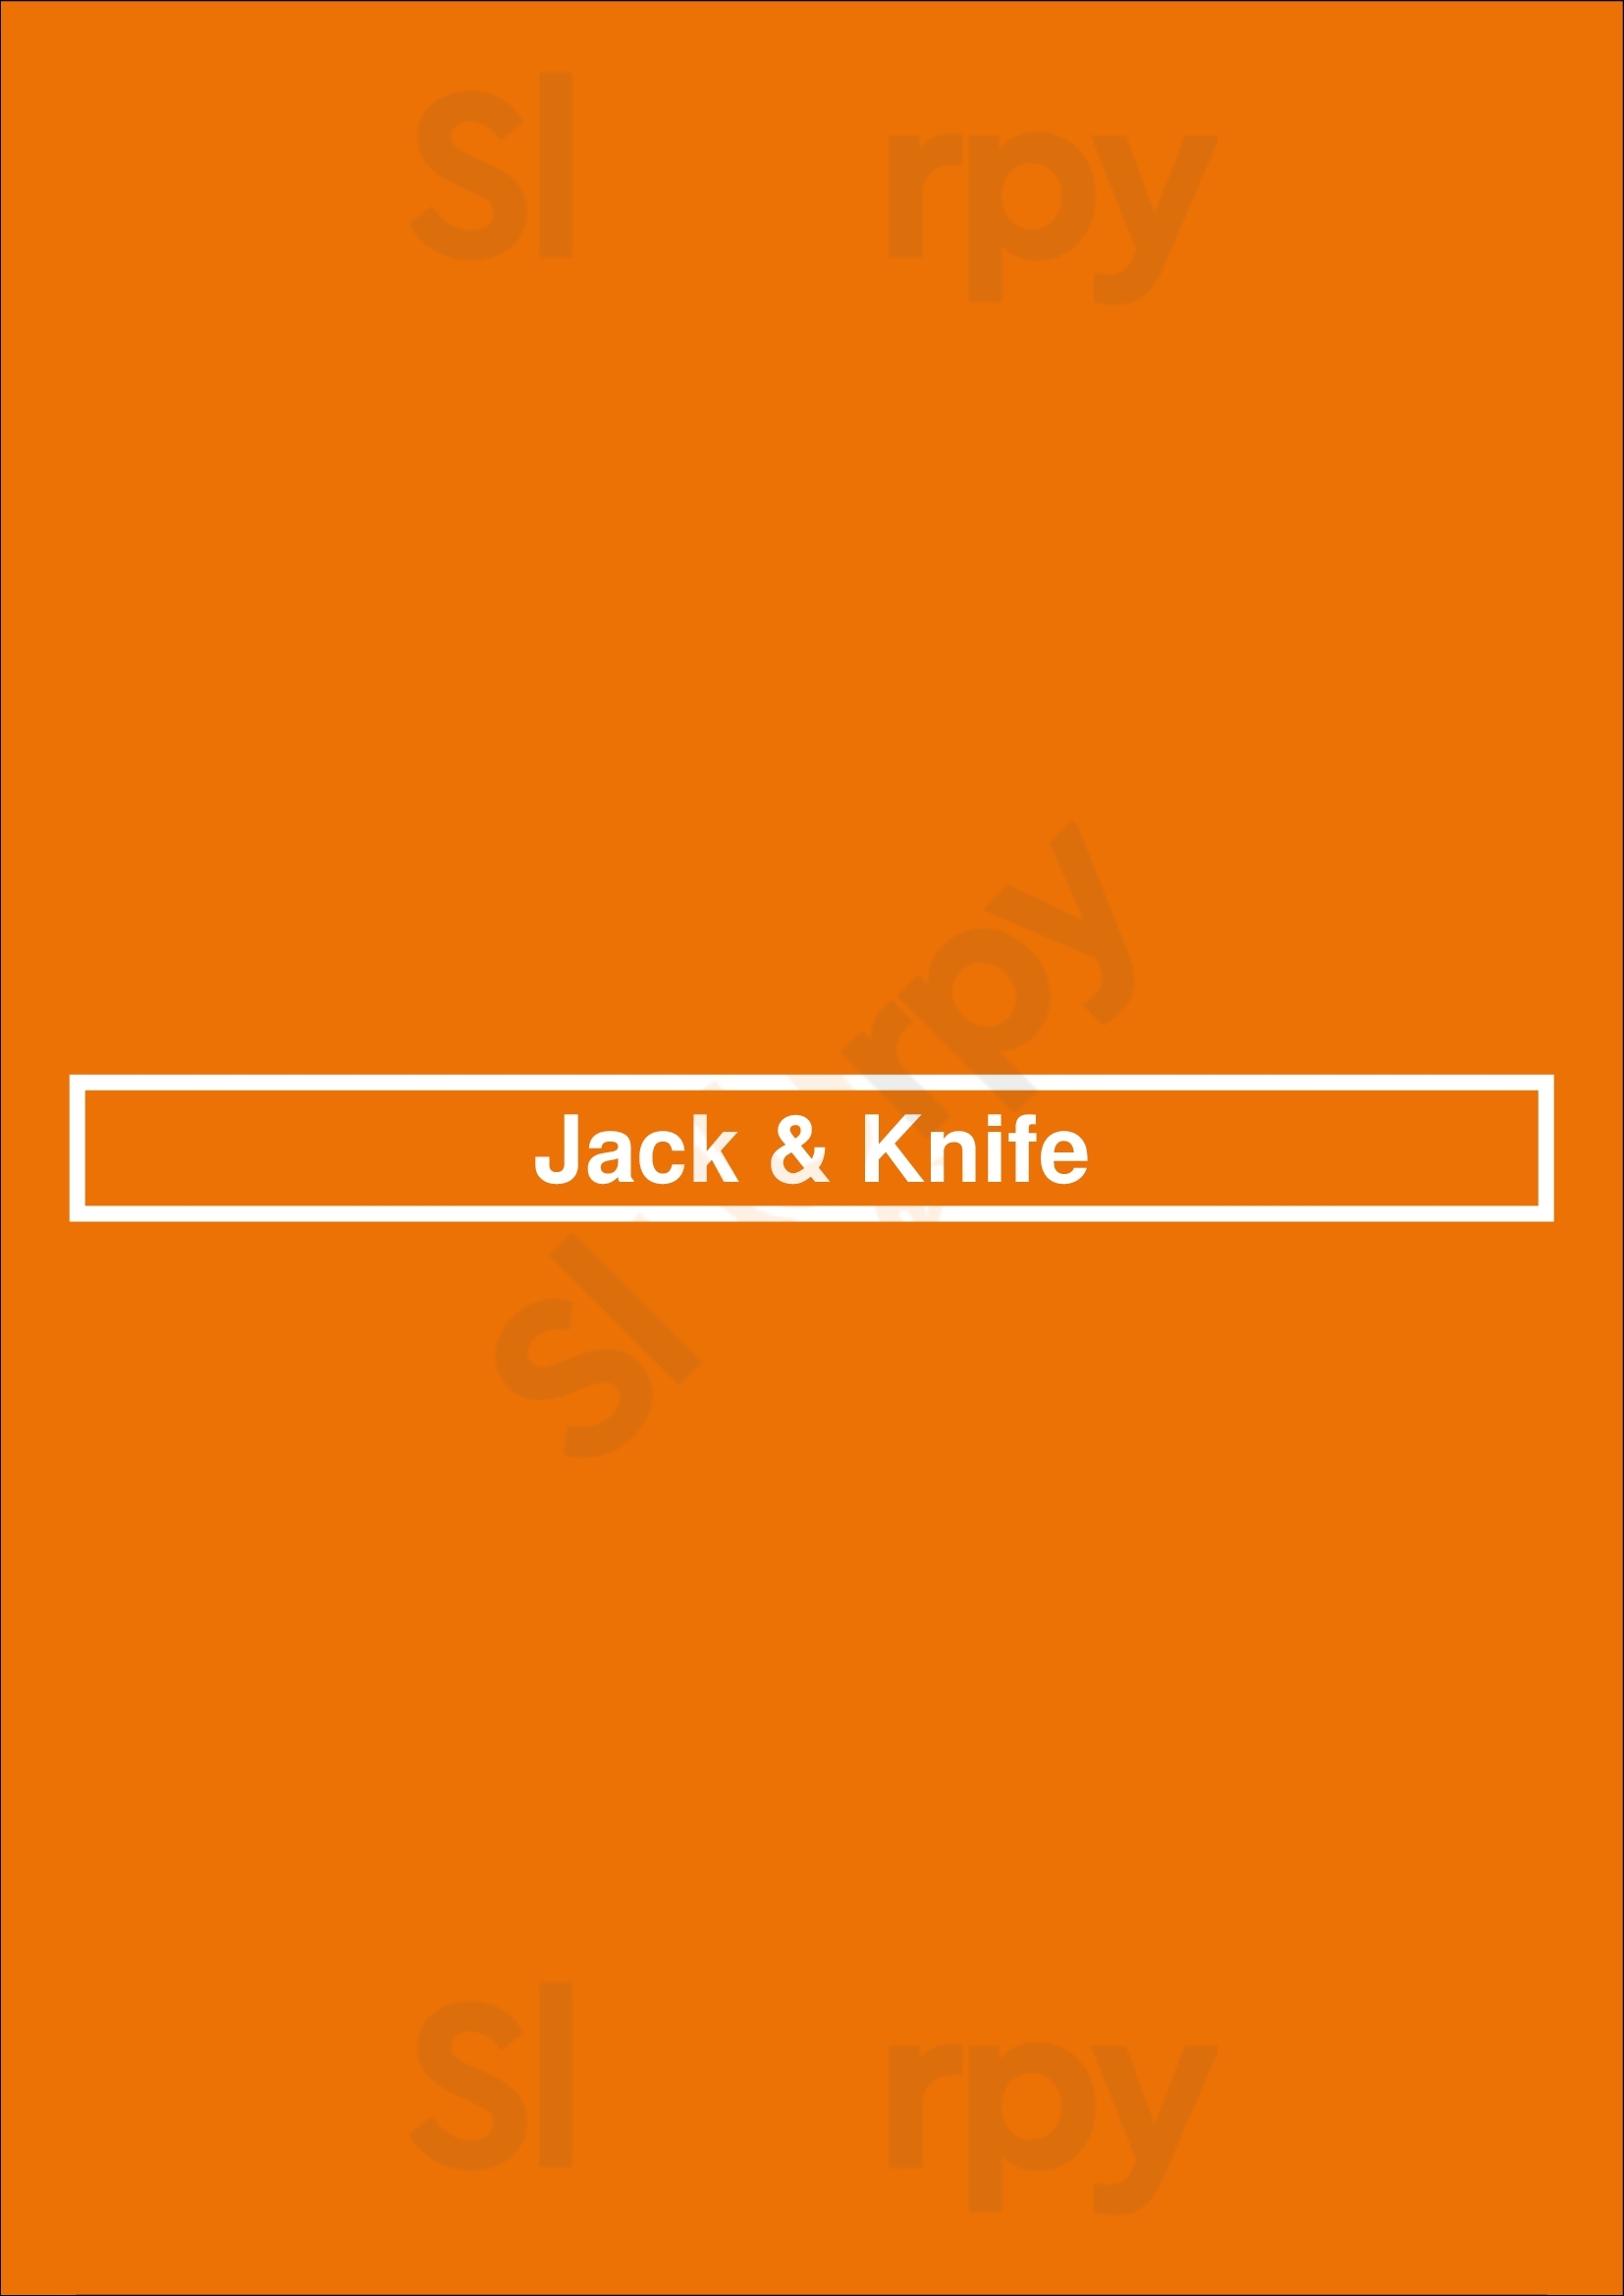 Jack & Knife Sydney Menu - 1